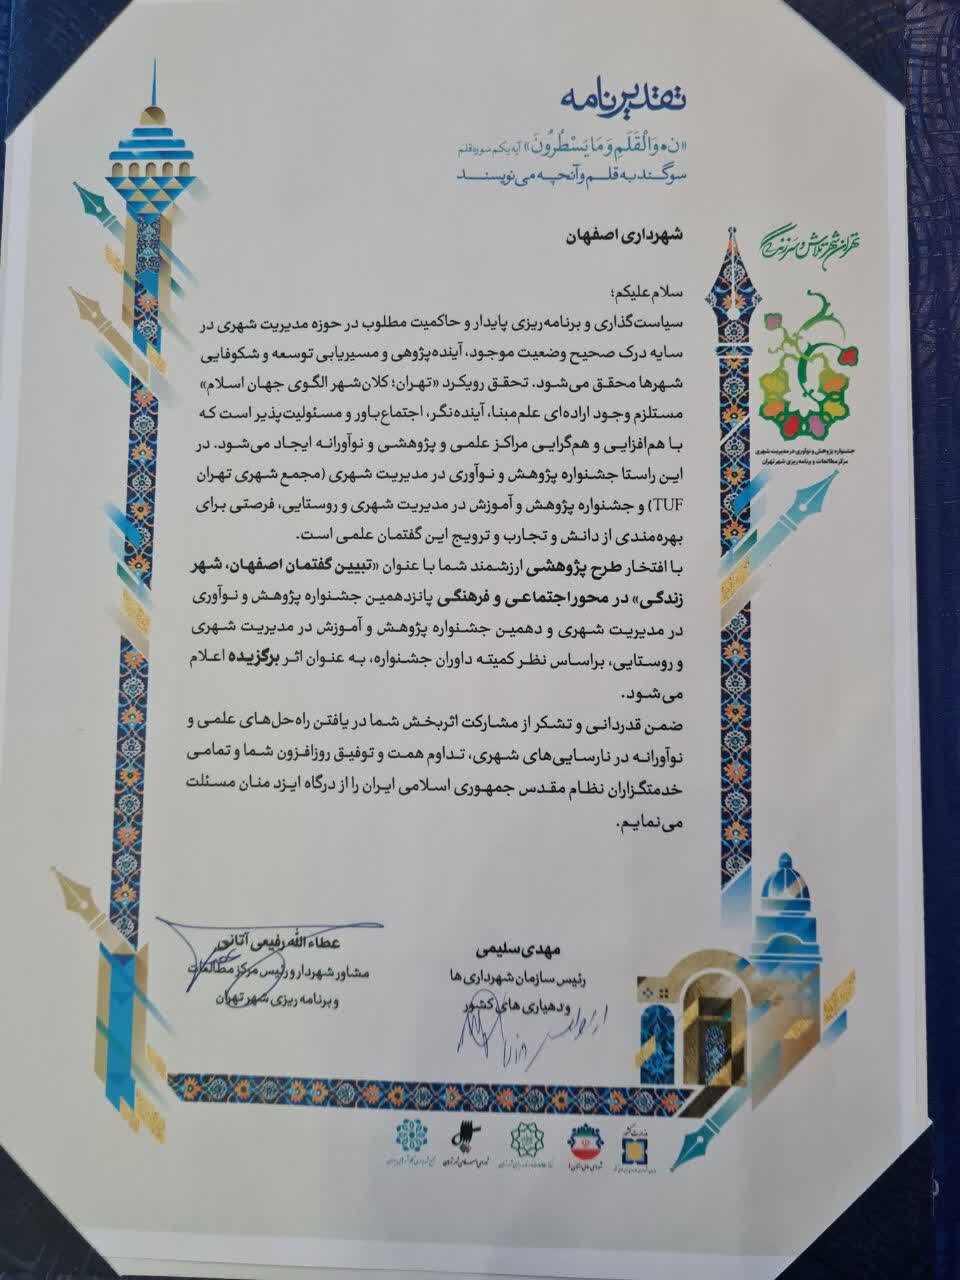 ۲ اثر پژوهشی شهرداری اصفهان رتبه گرفت